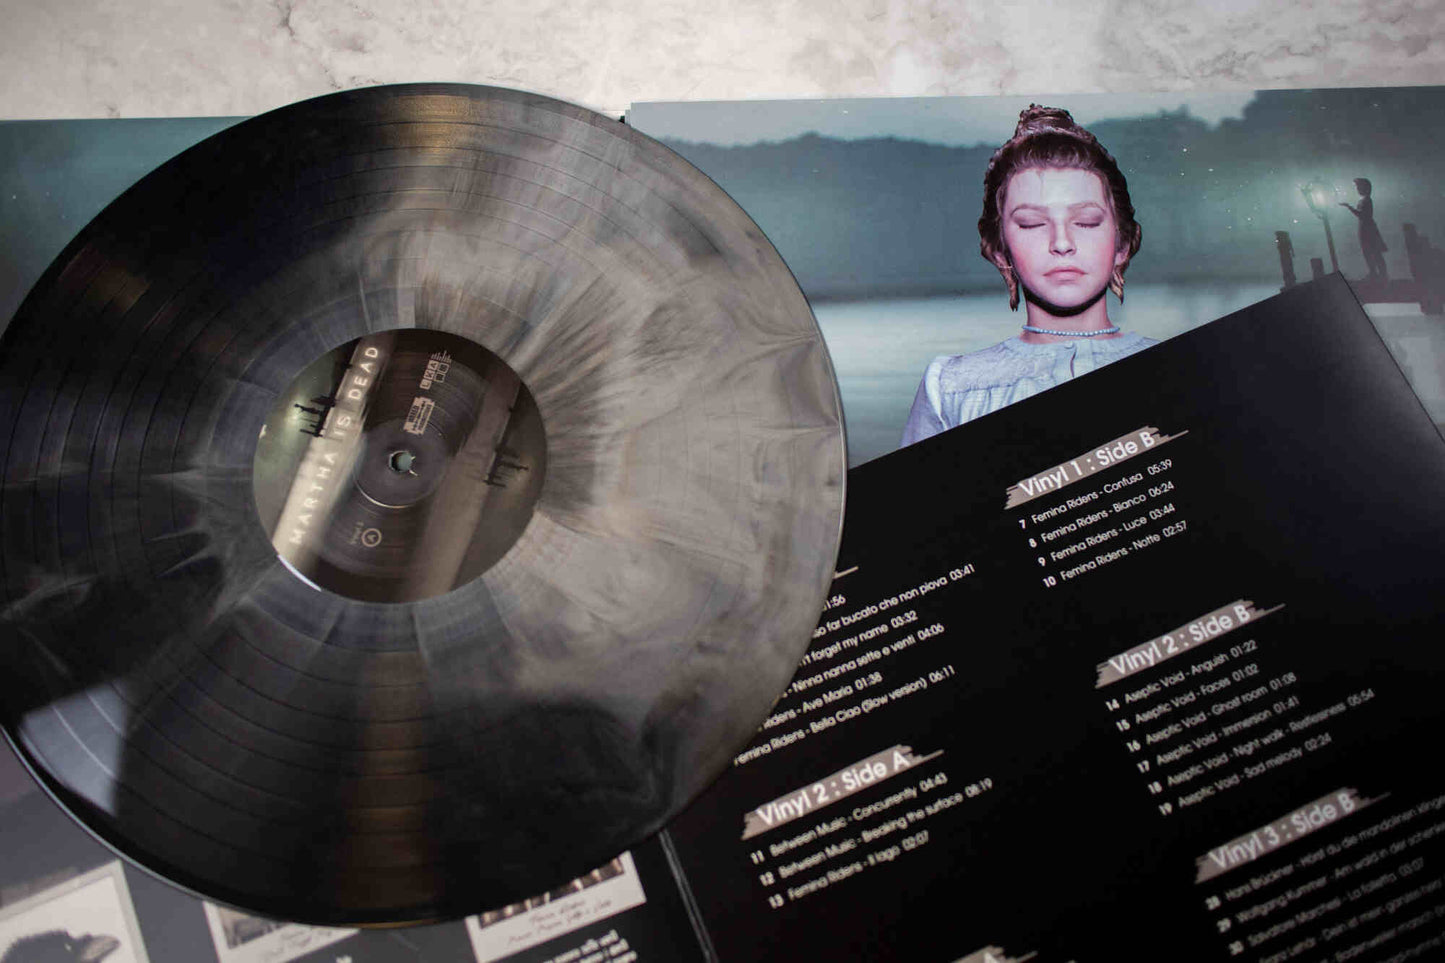 Martha Is Dead | Triple Vinyl | WP #02